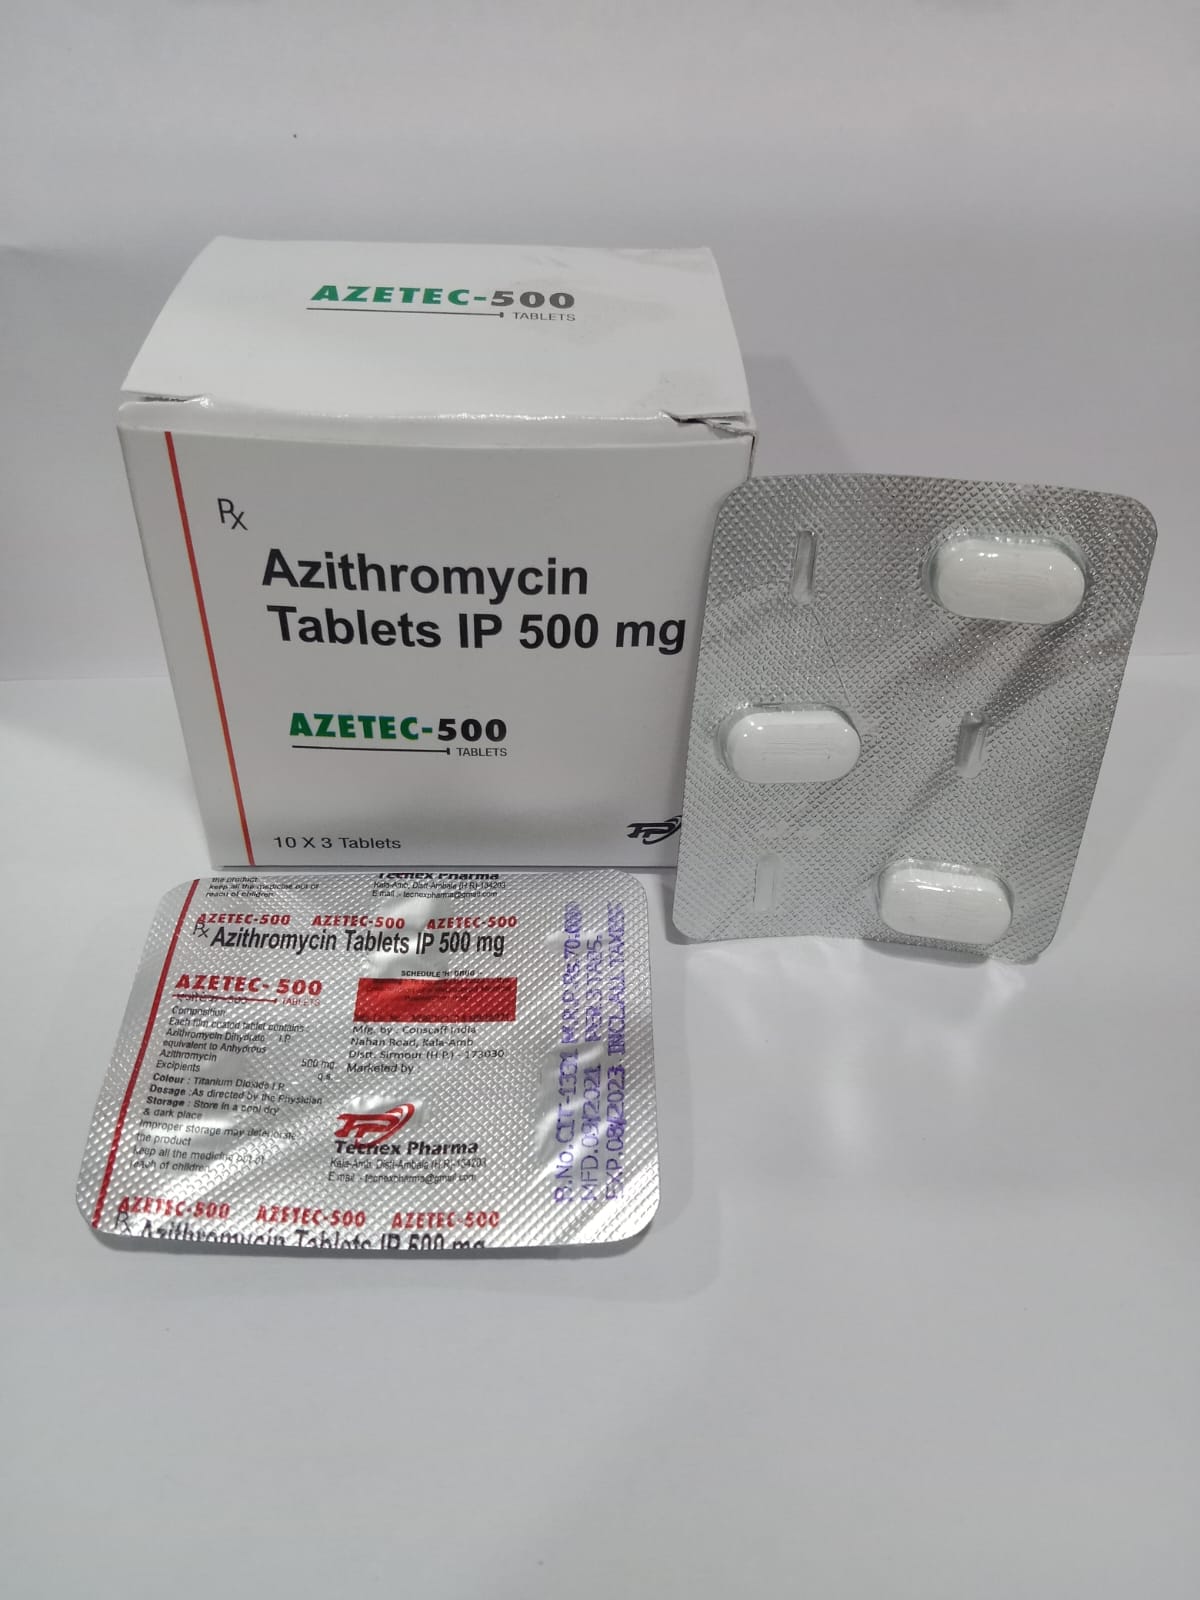 AZETEC-500 Tablets